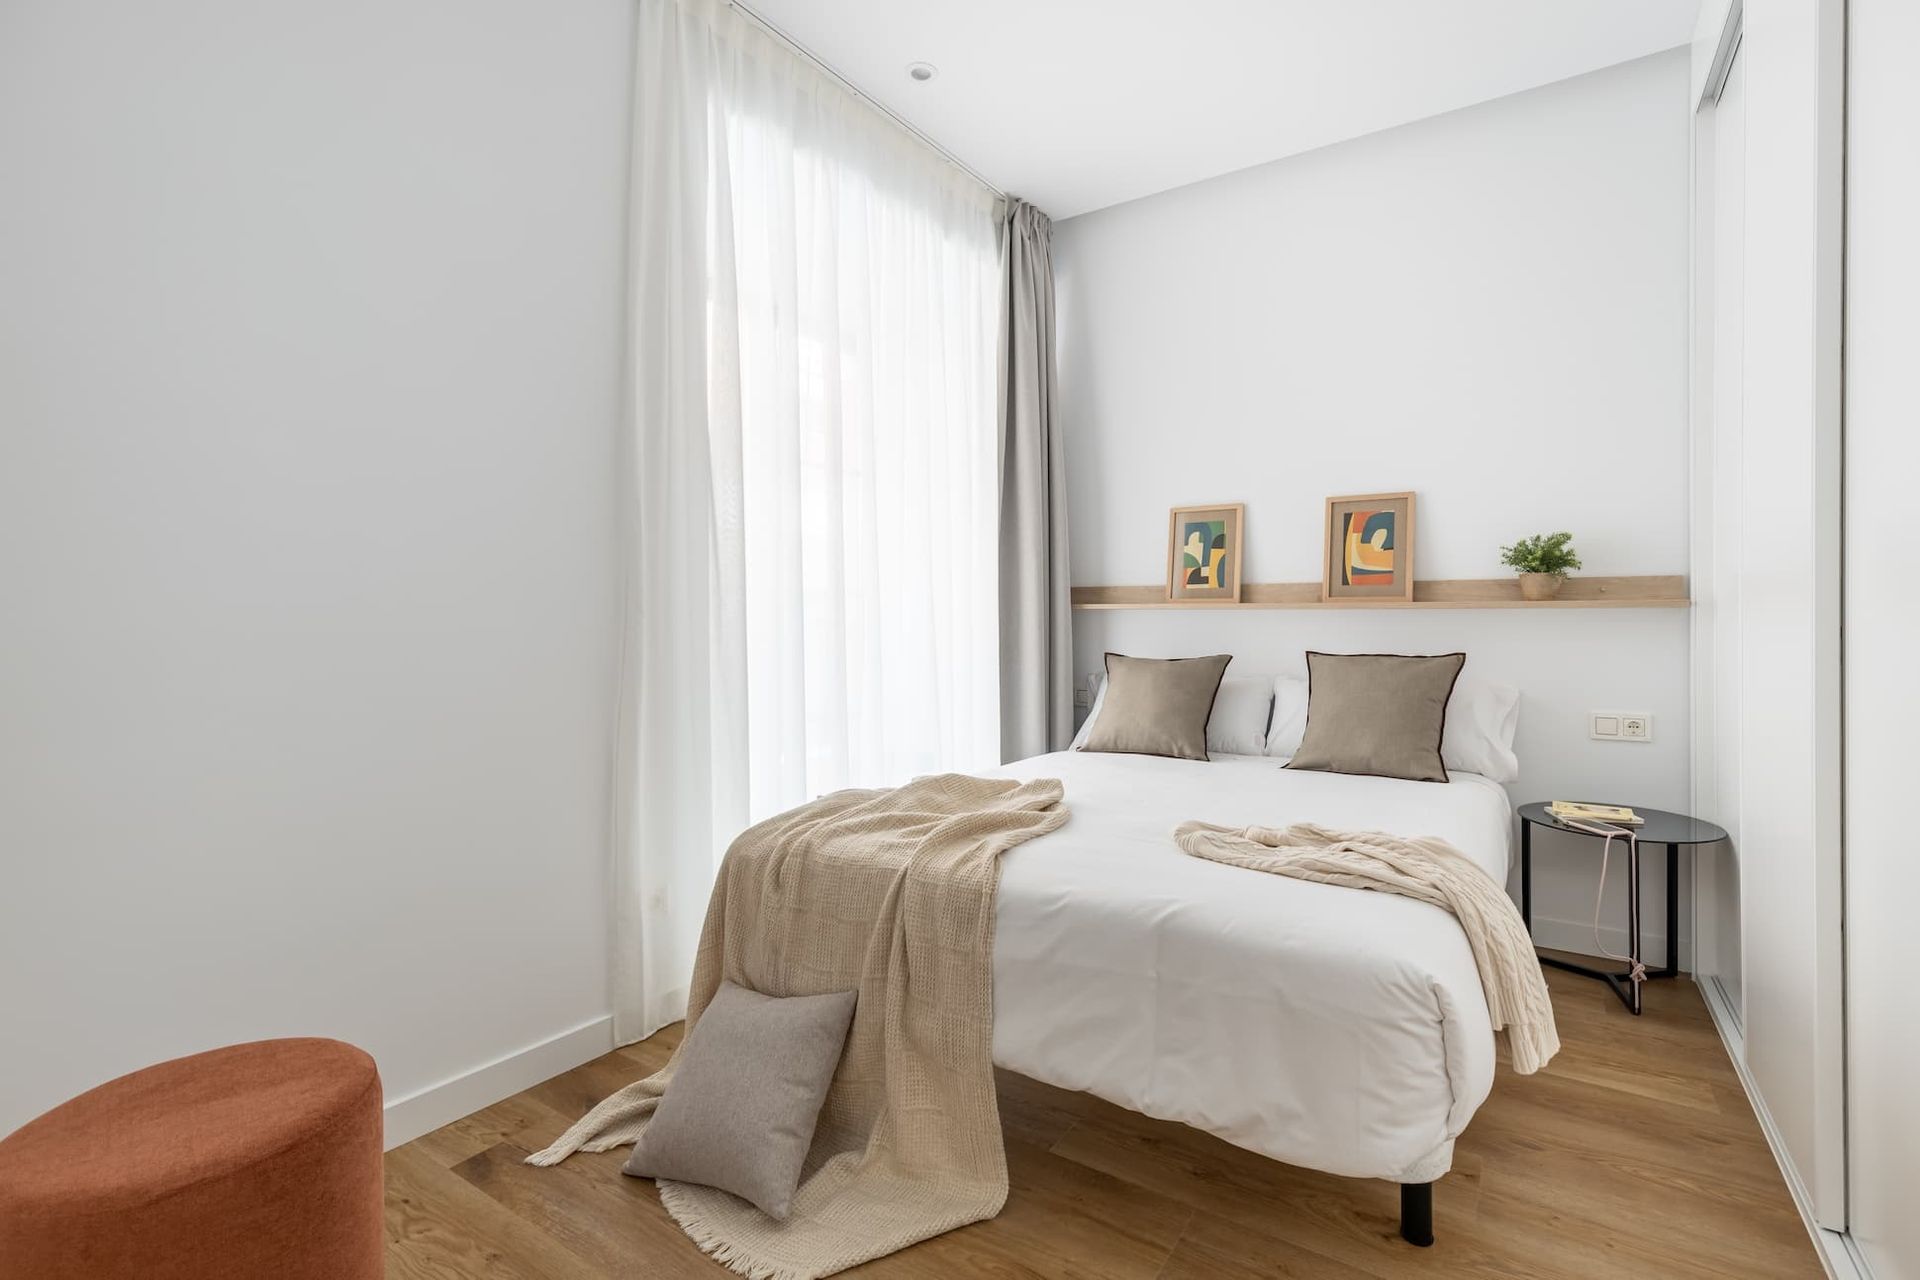 2 bedroom apartment in Ciudad Real